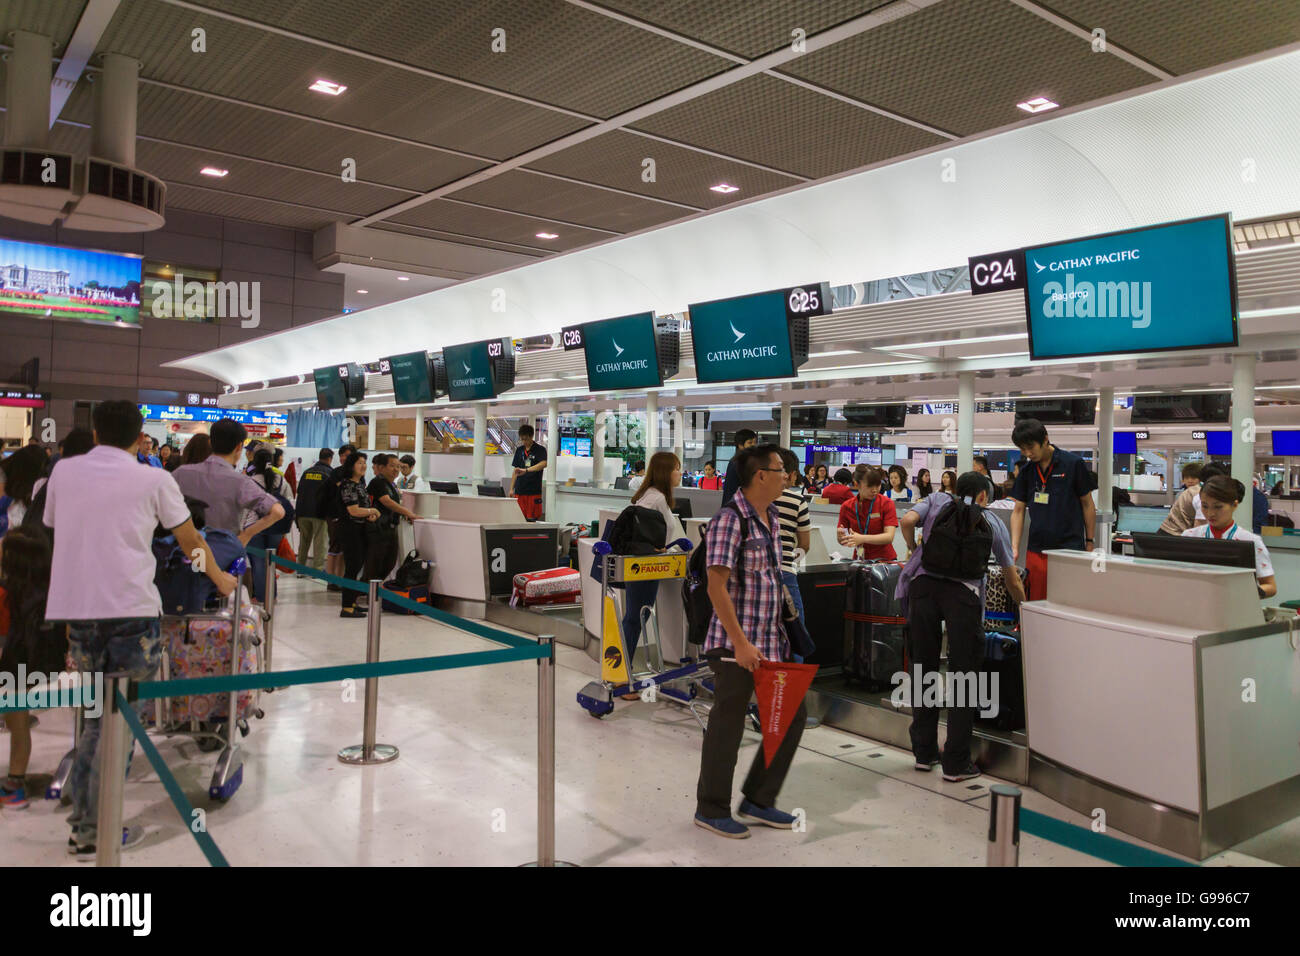 Cathay Pacific check-in counter at Narita International Airport, Tokyo, Japan Stock Photo